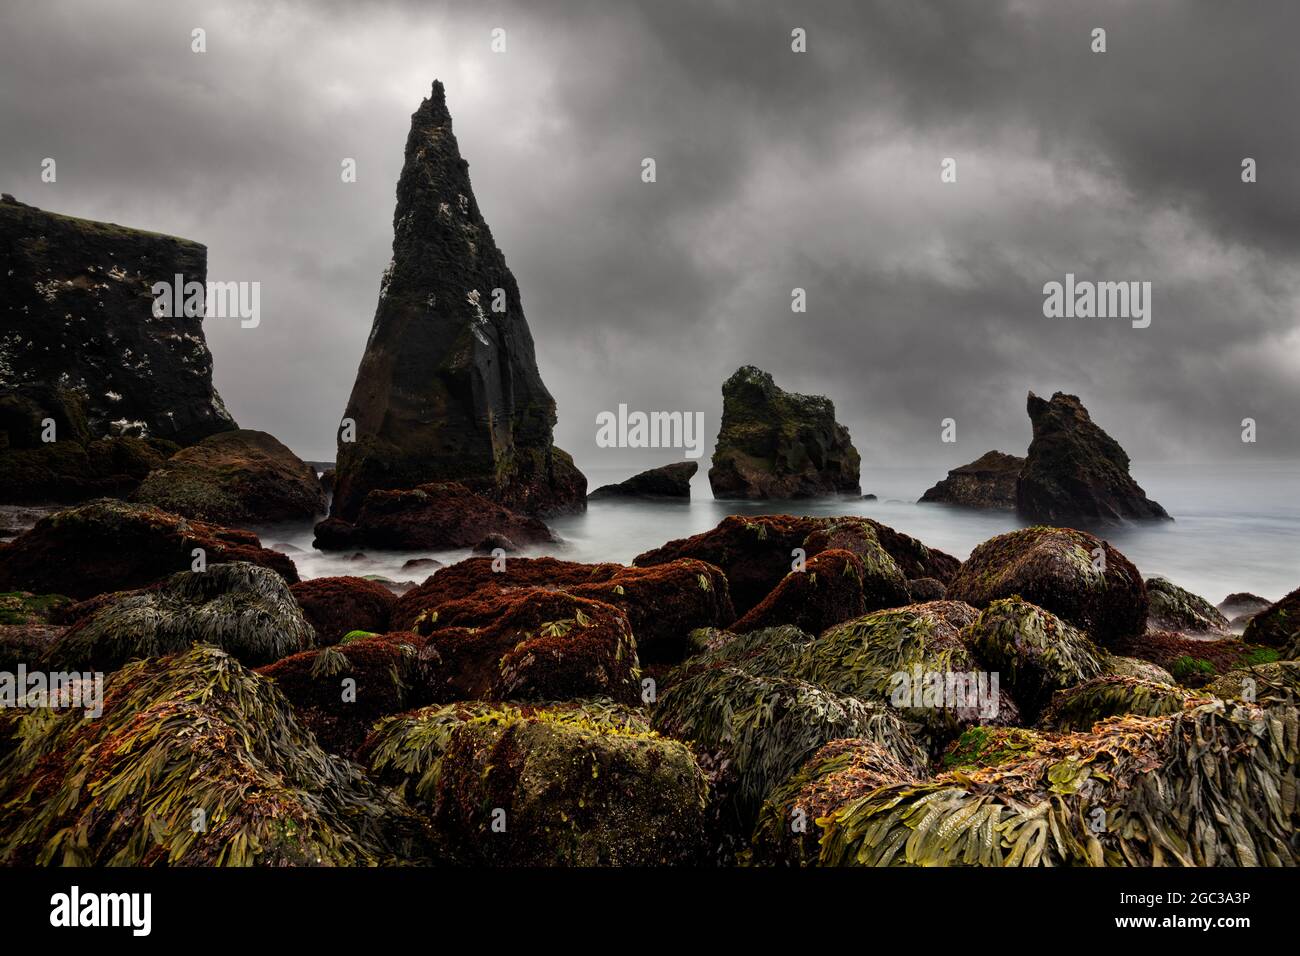 Asombrosa formación de roca salvaje llamada Valahnukamöl. Foto de stock